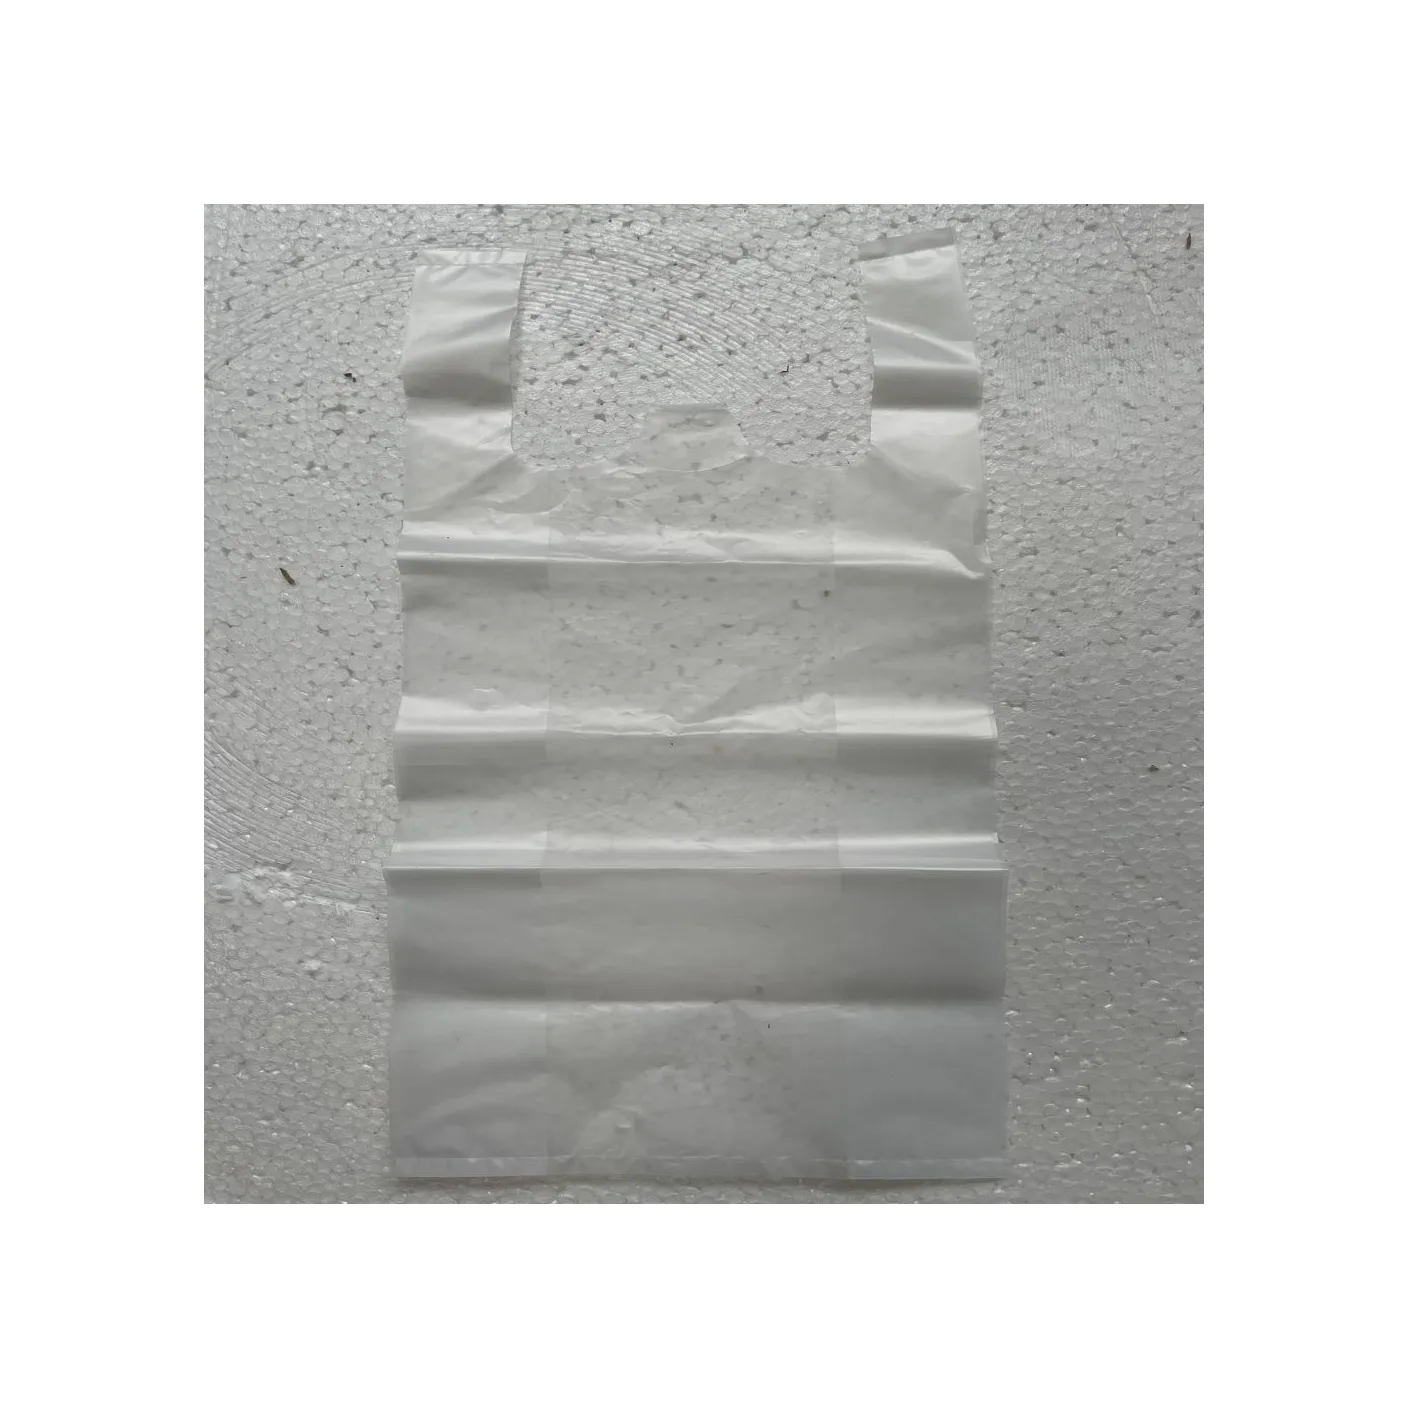 Bolsa de polietileno laminado de plástico de impresión digital transparente sellada portátil de control de alta calidad